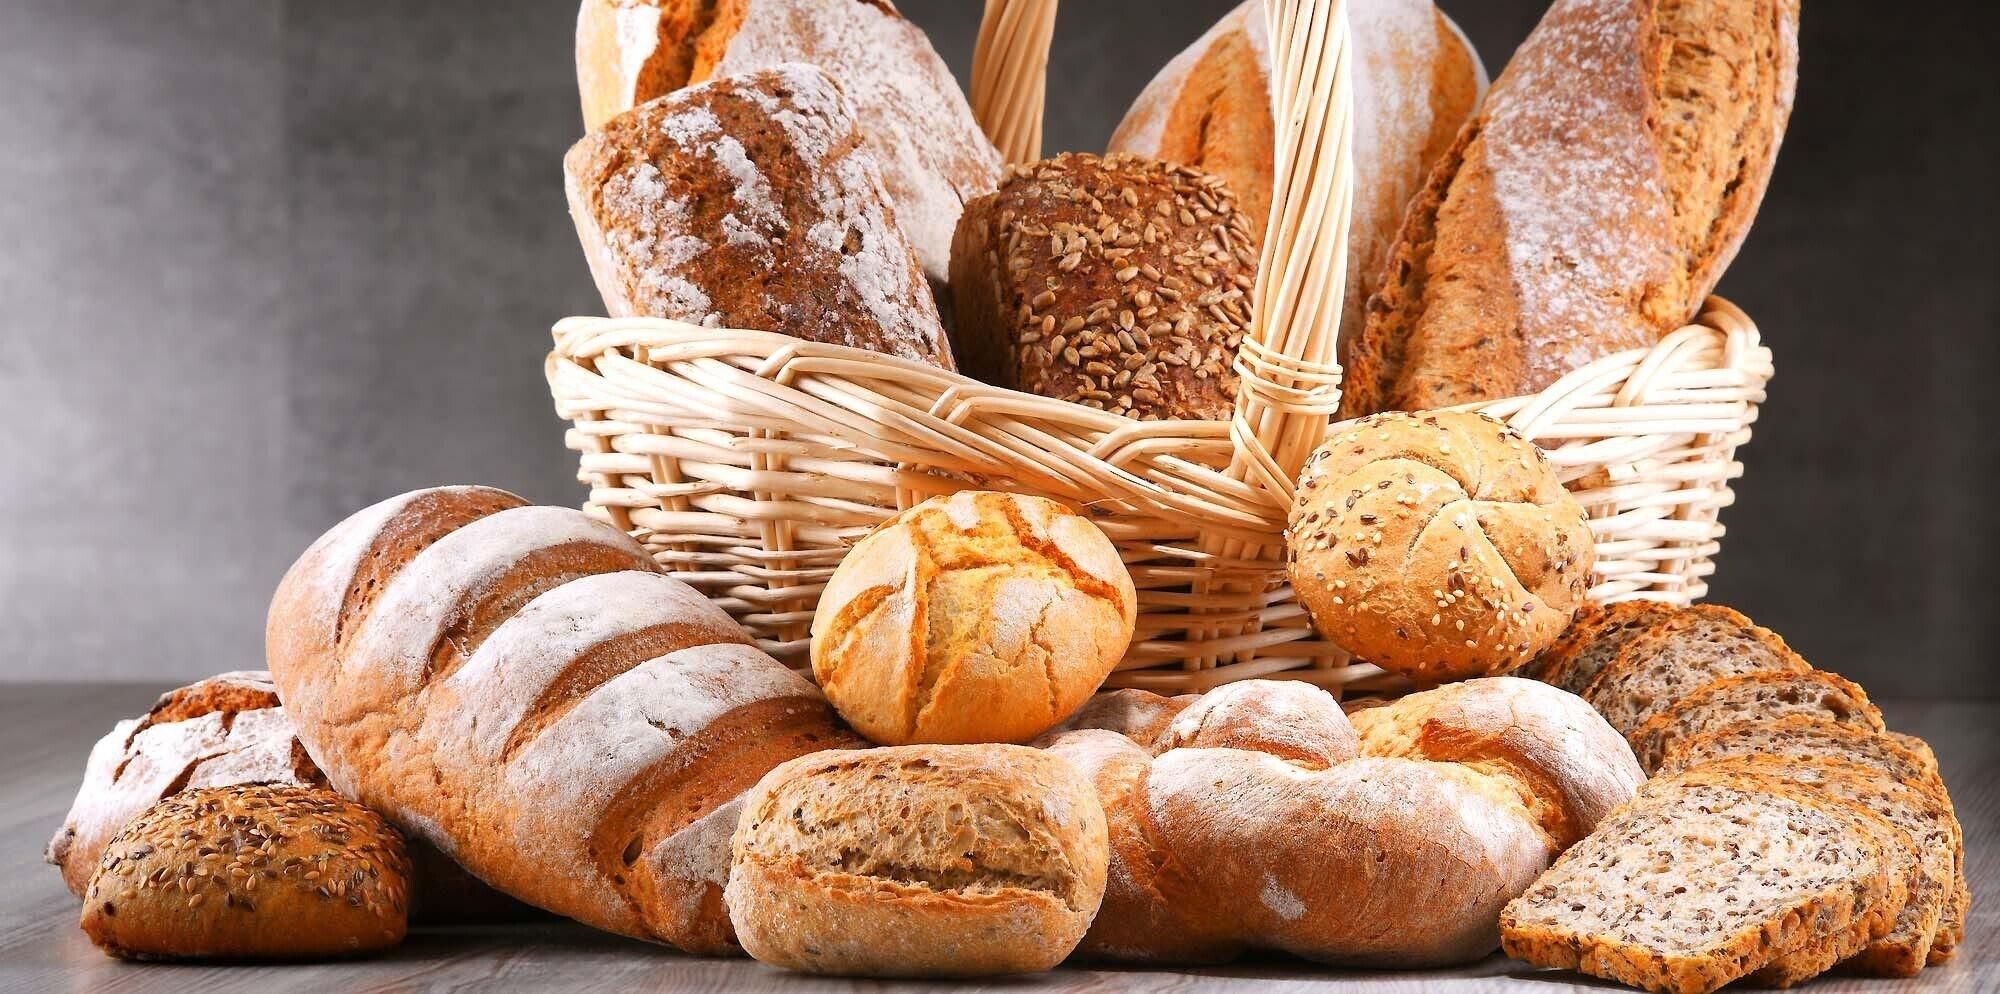 Хлеб и т д. Хлеб и хлебобулочные изделия. Хлебо будочные изделия. Хлеб булочки. Красивый хлеб.